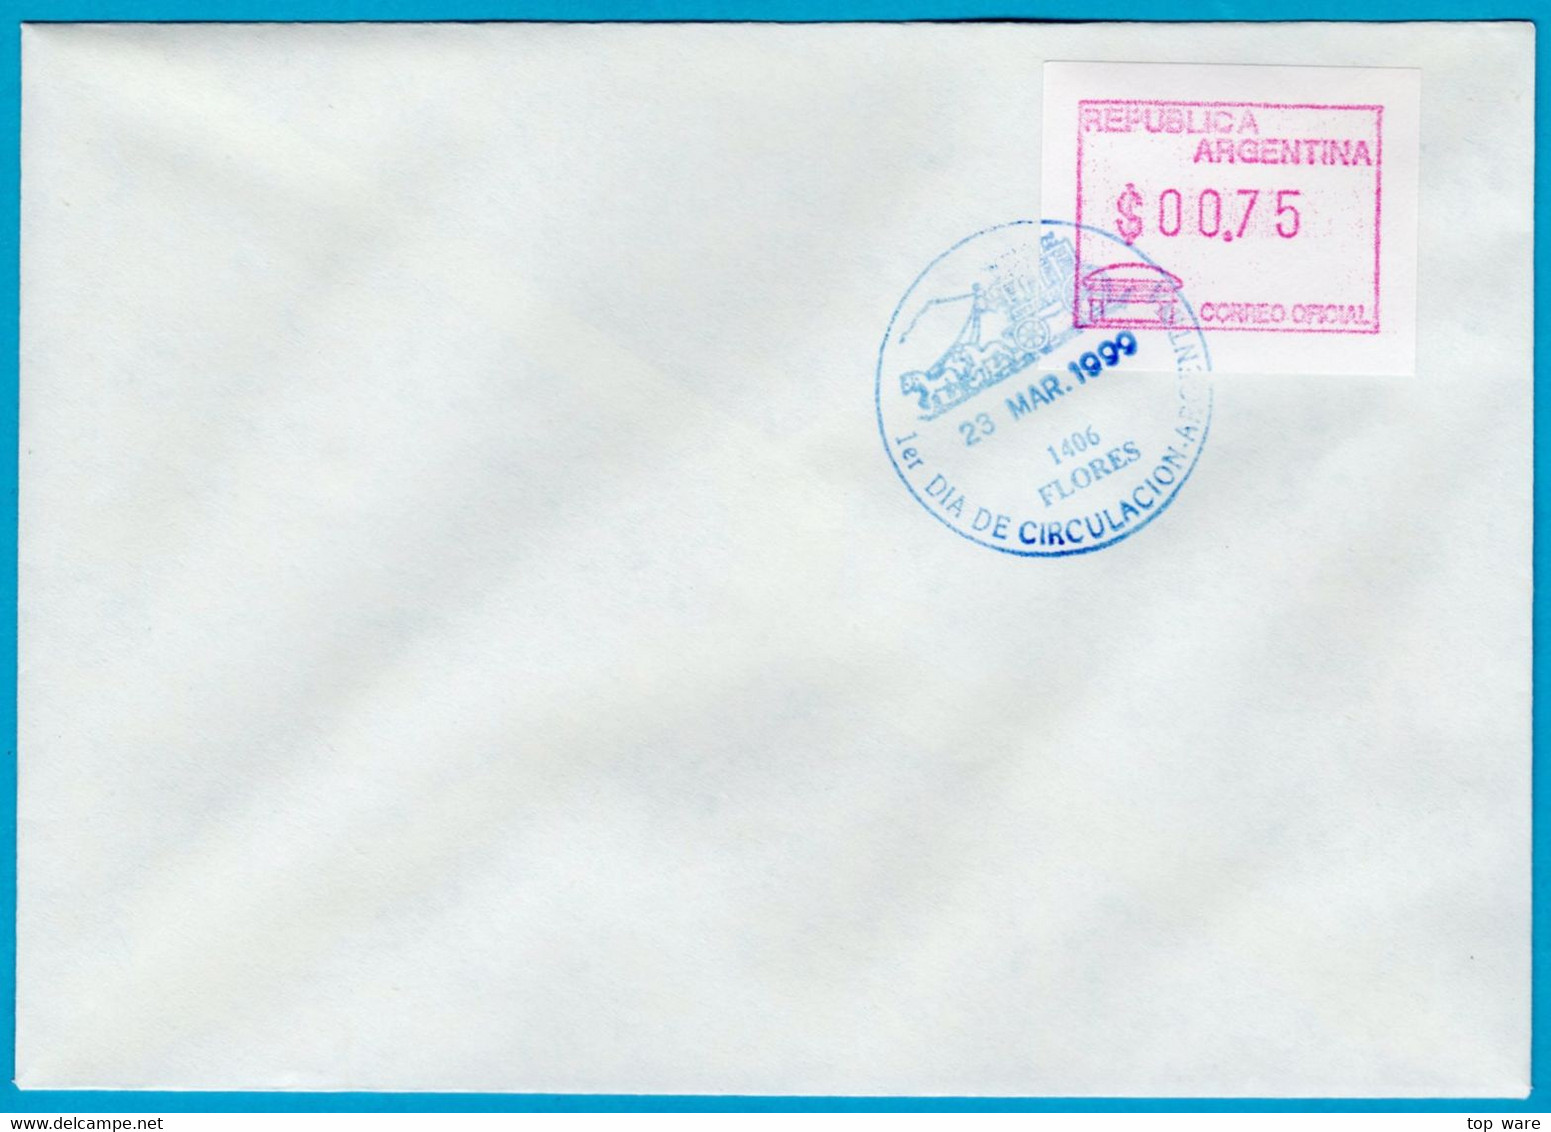 1999 Argentinien Argentina ATM 3 / $0,75 On FDC 23 MAR.1999 / FRAMA Automatenmarken Etiquetas Klüssendorf - Automatenmarken (Frama)